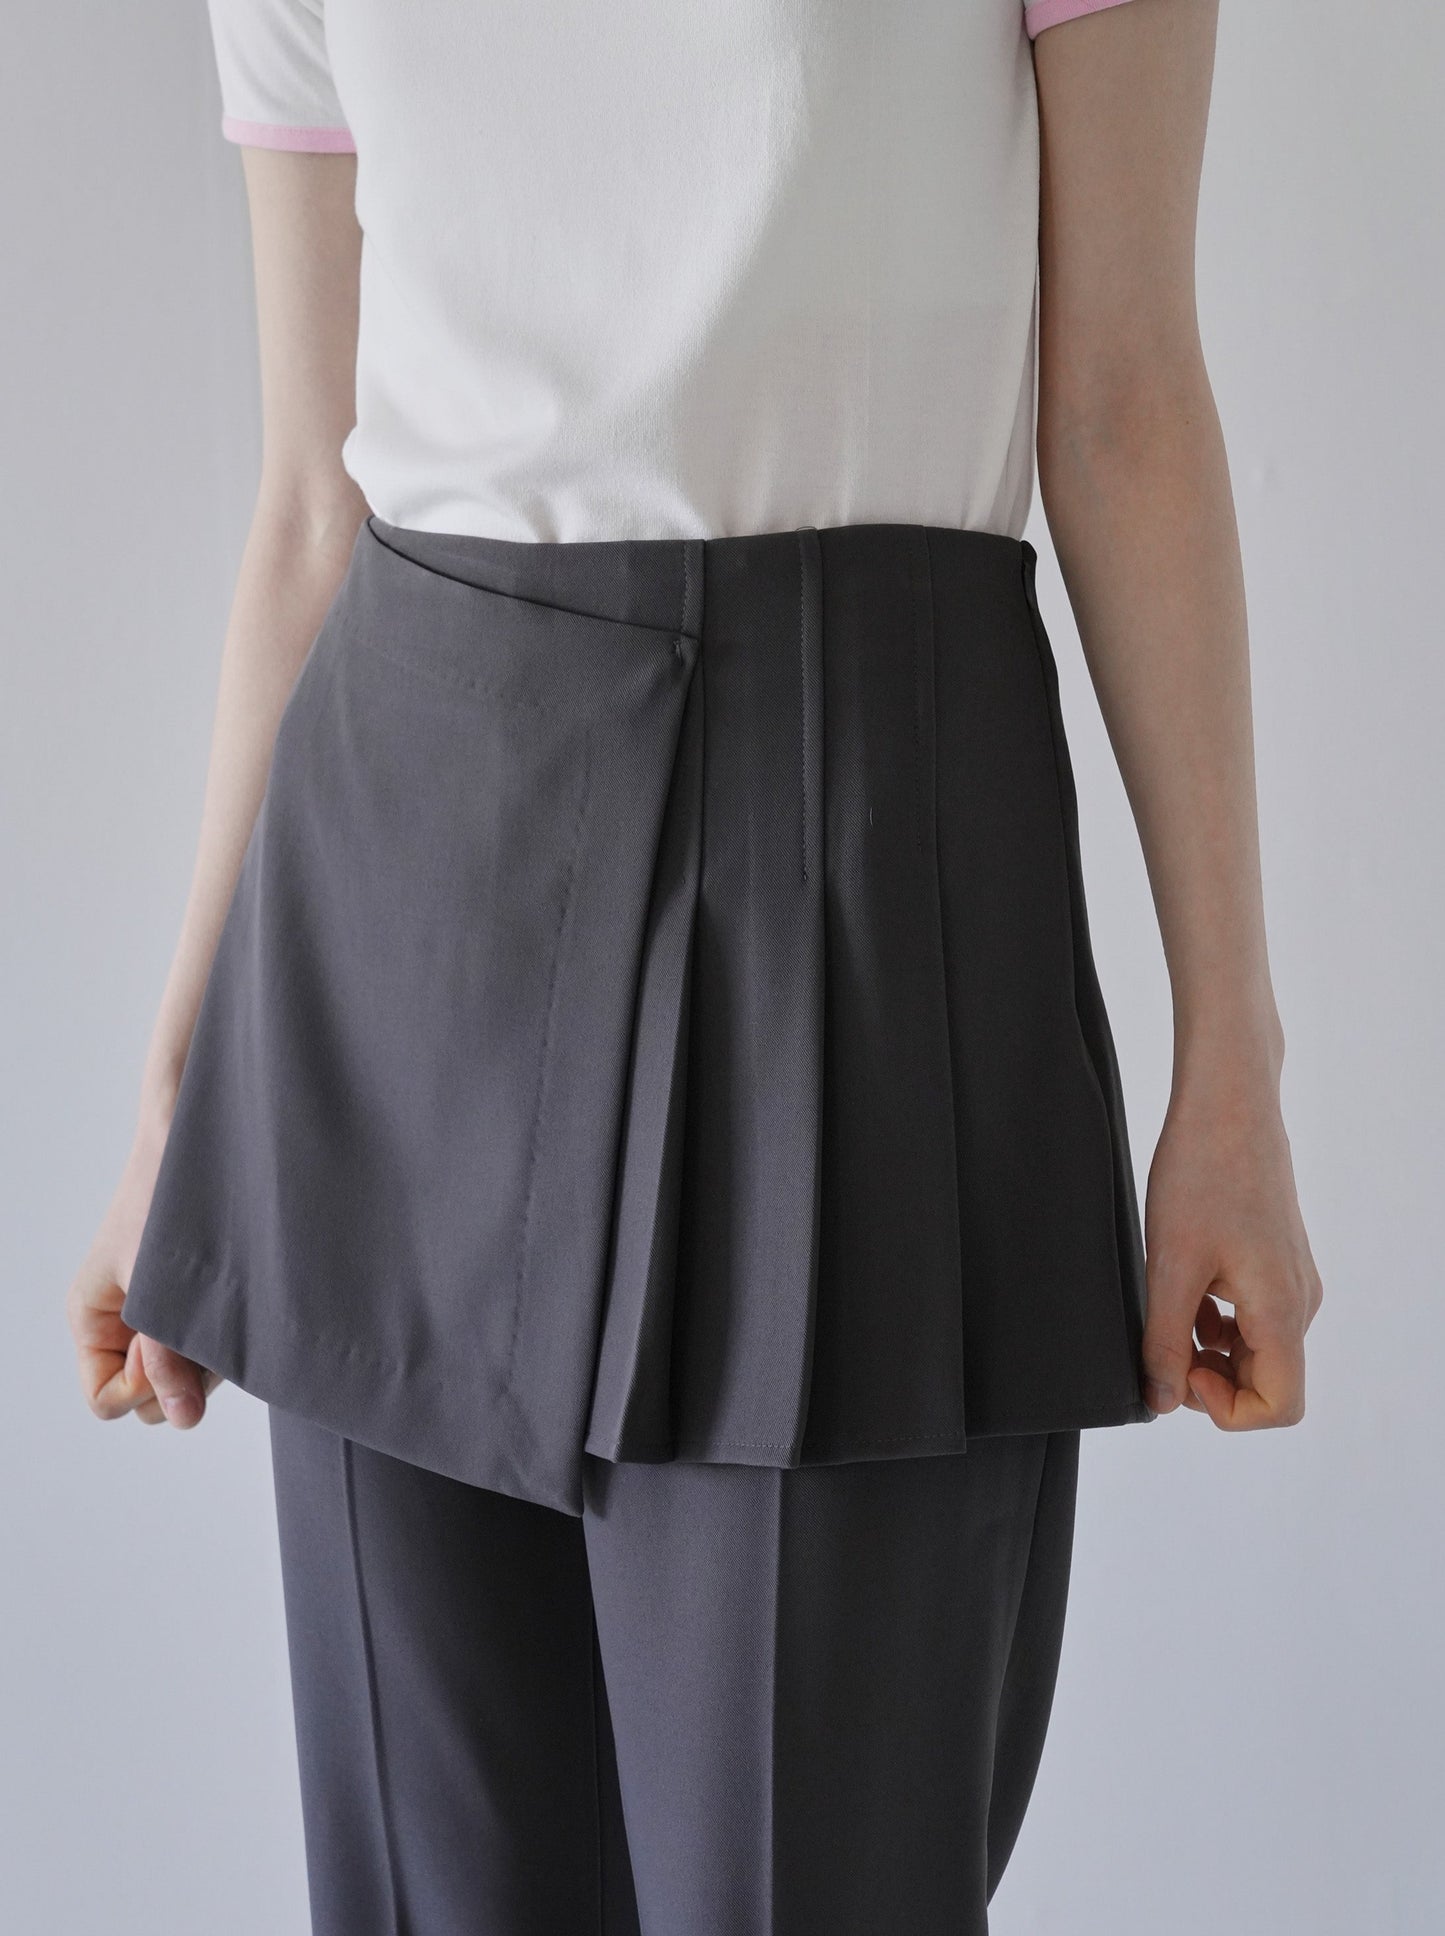 layered skirt and pants